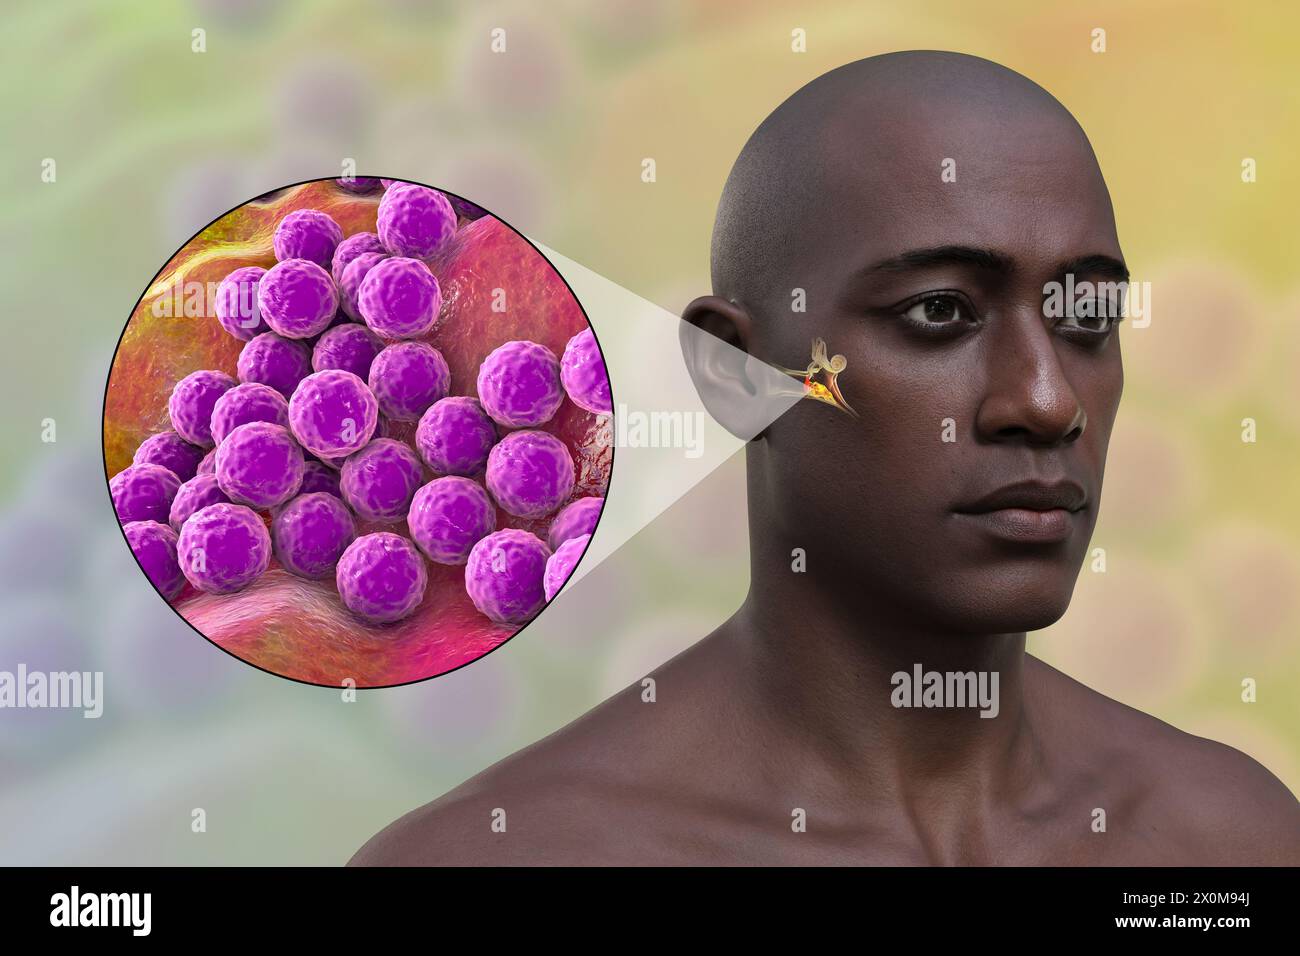 3D-Illustration eines Mannes mit einer bakteriellen Mittelohrinfektion (Otitis Media) und einer Nahaufnahme des verursachenden Bakteriums Staphylococcus aureus. Zu den Symptomen gehören Entzündungen, Flüssigkeitsansammlungen und Schmerzen im Ohr. Stockfoto